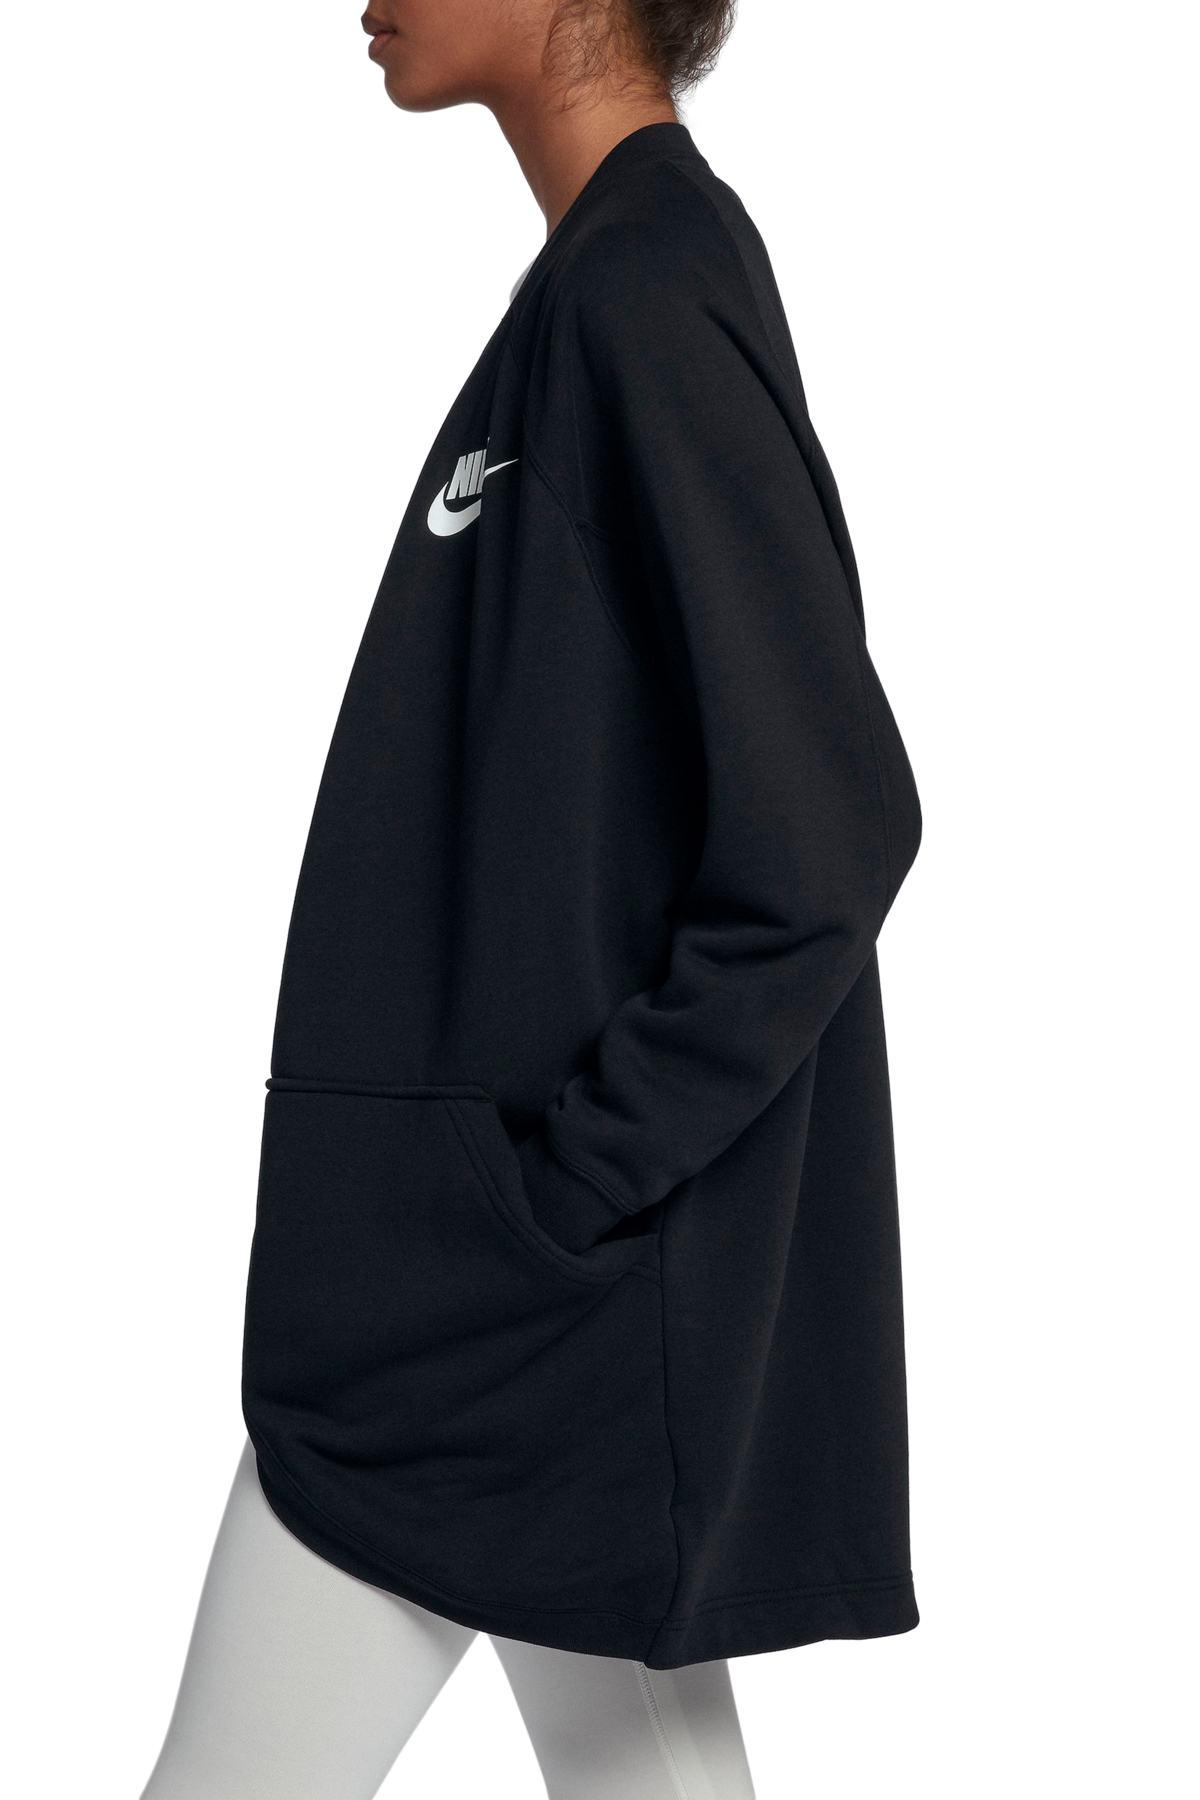 Nike Sportswear Rally Relaxed Fleece Cardigan in Black/White (Black) | Lyst